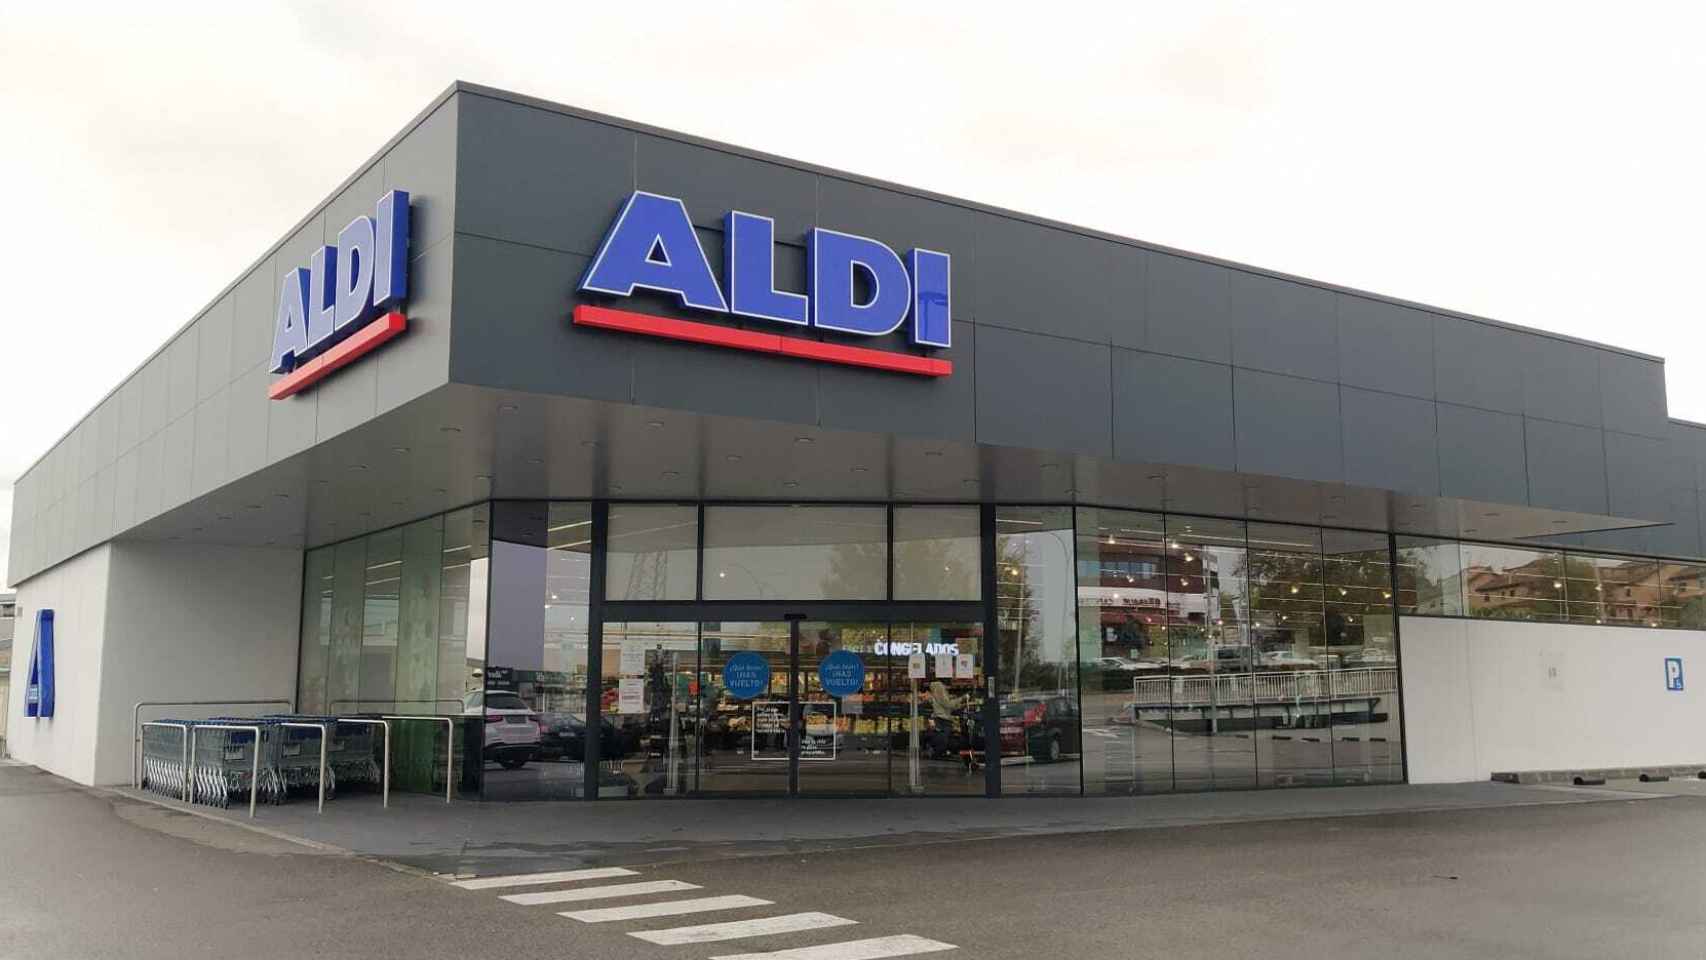 El supermercado Aldi de Villaviciosa de Odón, una de las 320 tiendas que la cadena alemana tiene en España.